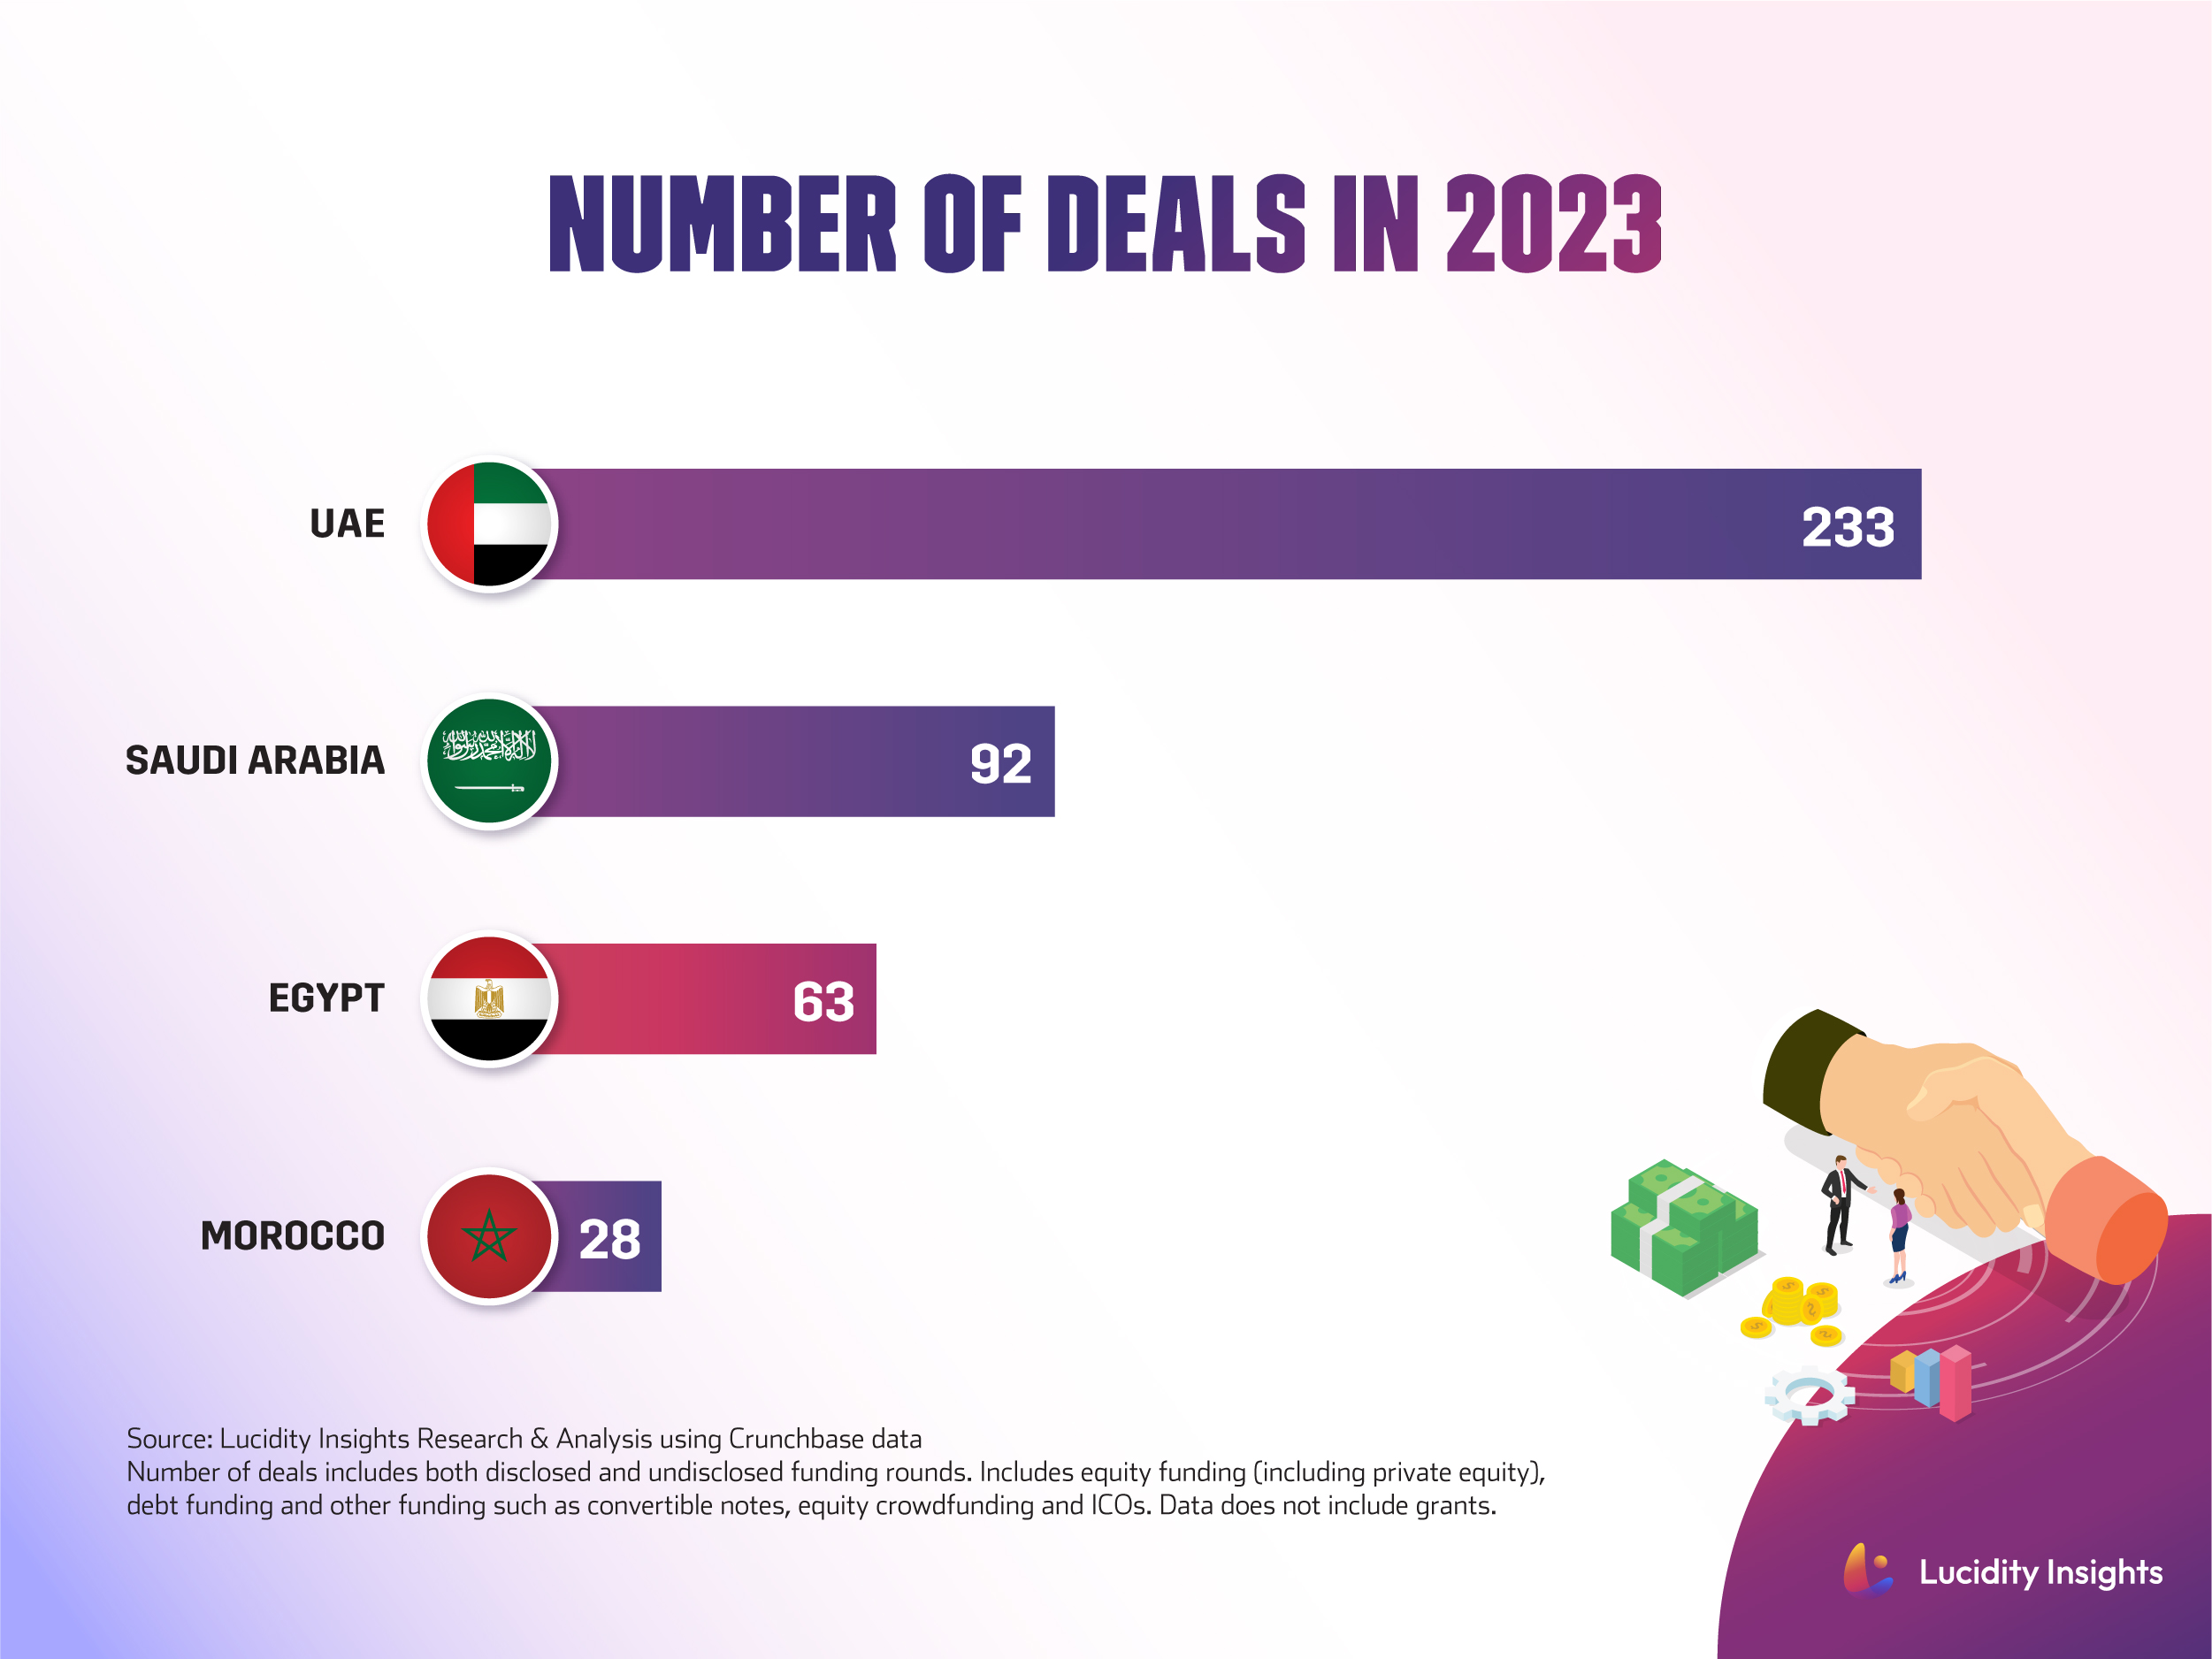 MENA Number of Deals in 2023